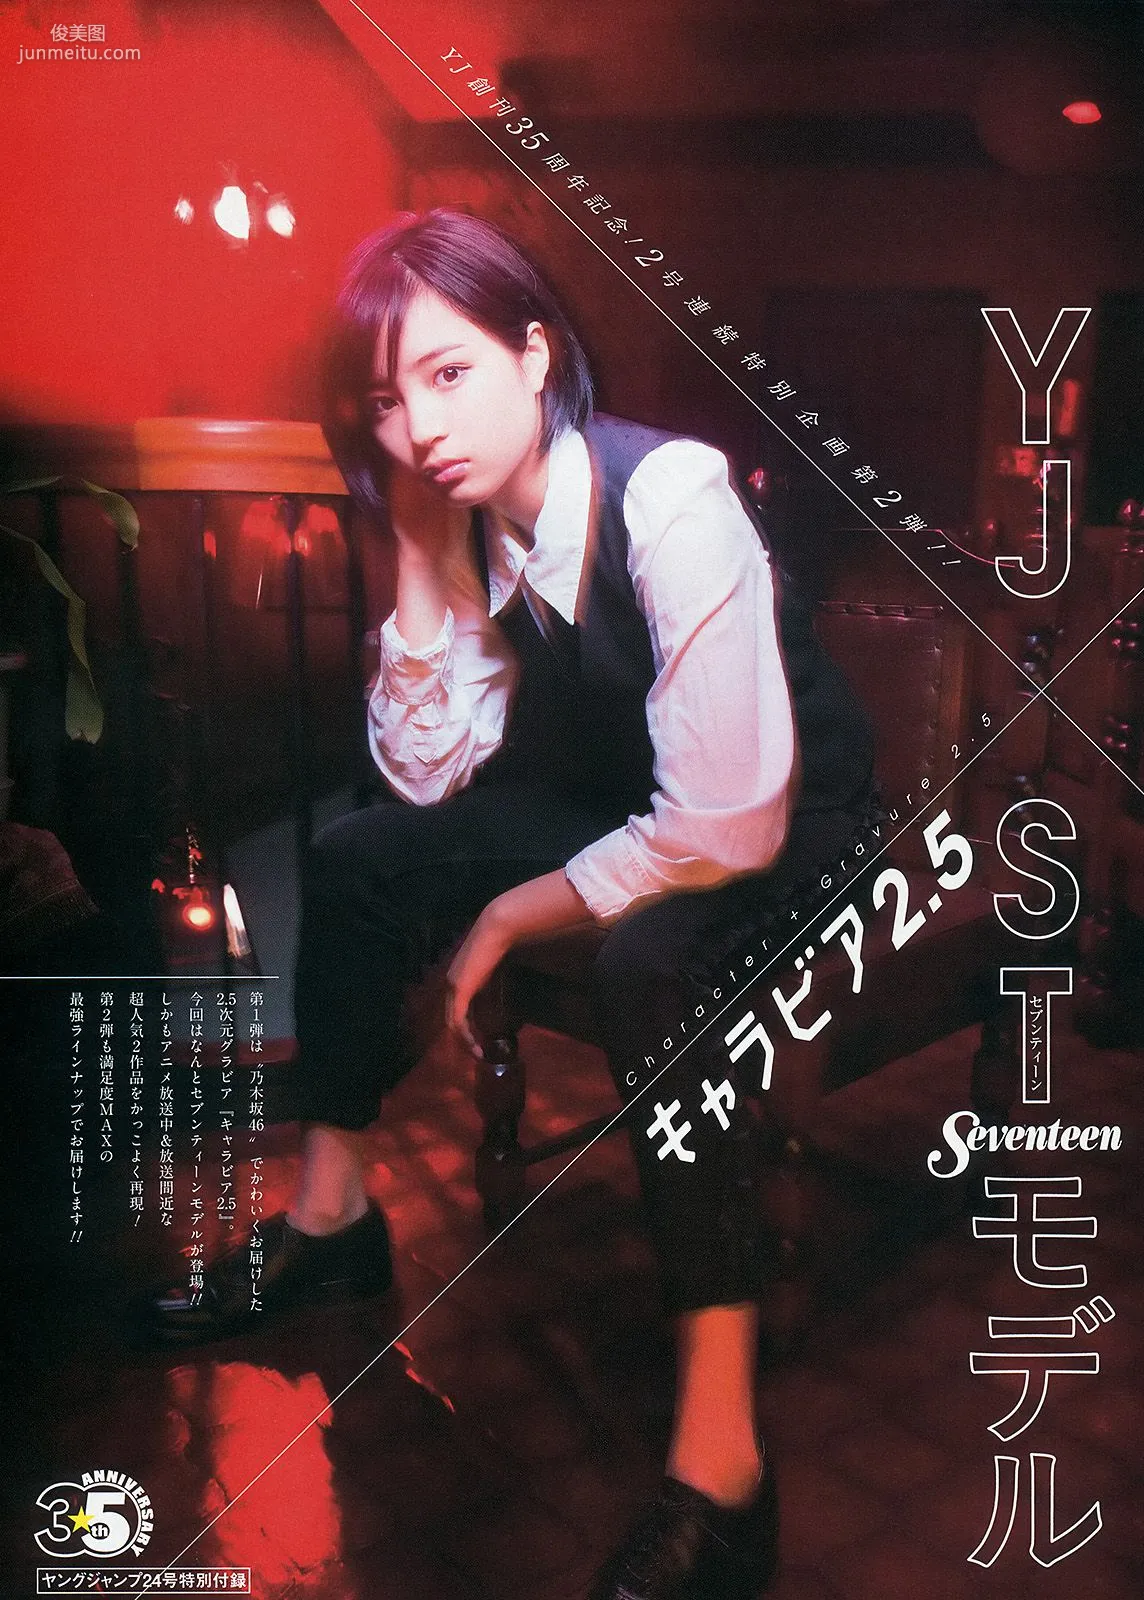 おのののか 高見奈央 YJ×Seventeenモデル [Weekly Young Jump] 2014年No.24 写真杂志14